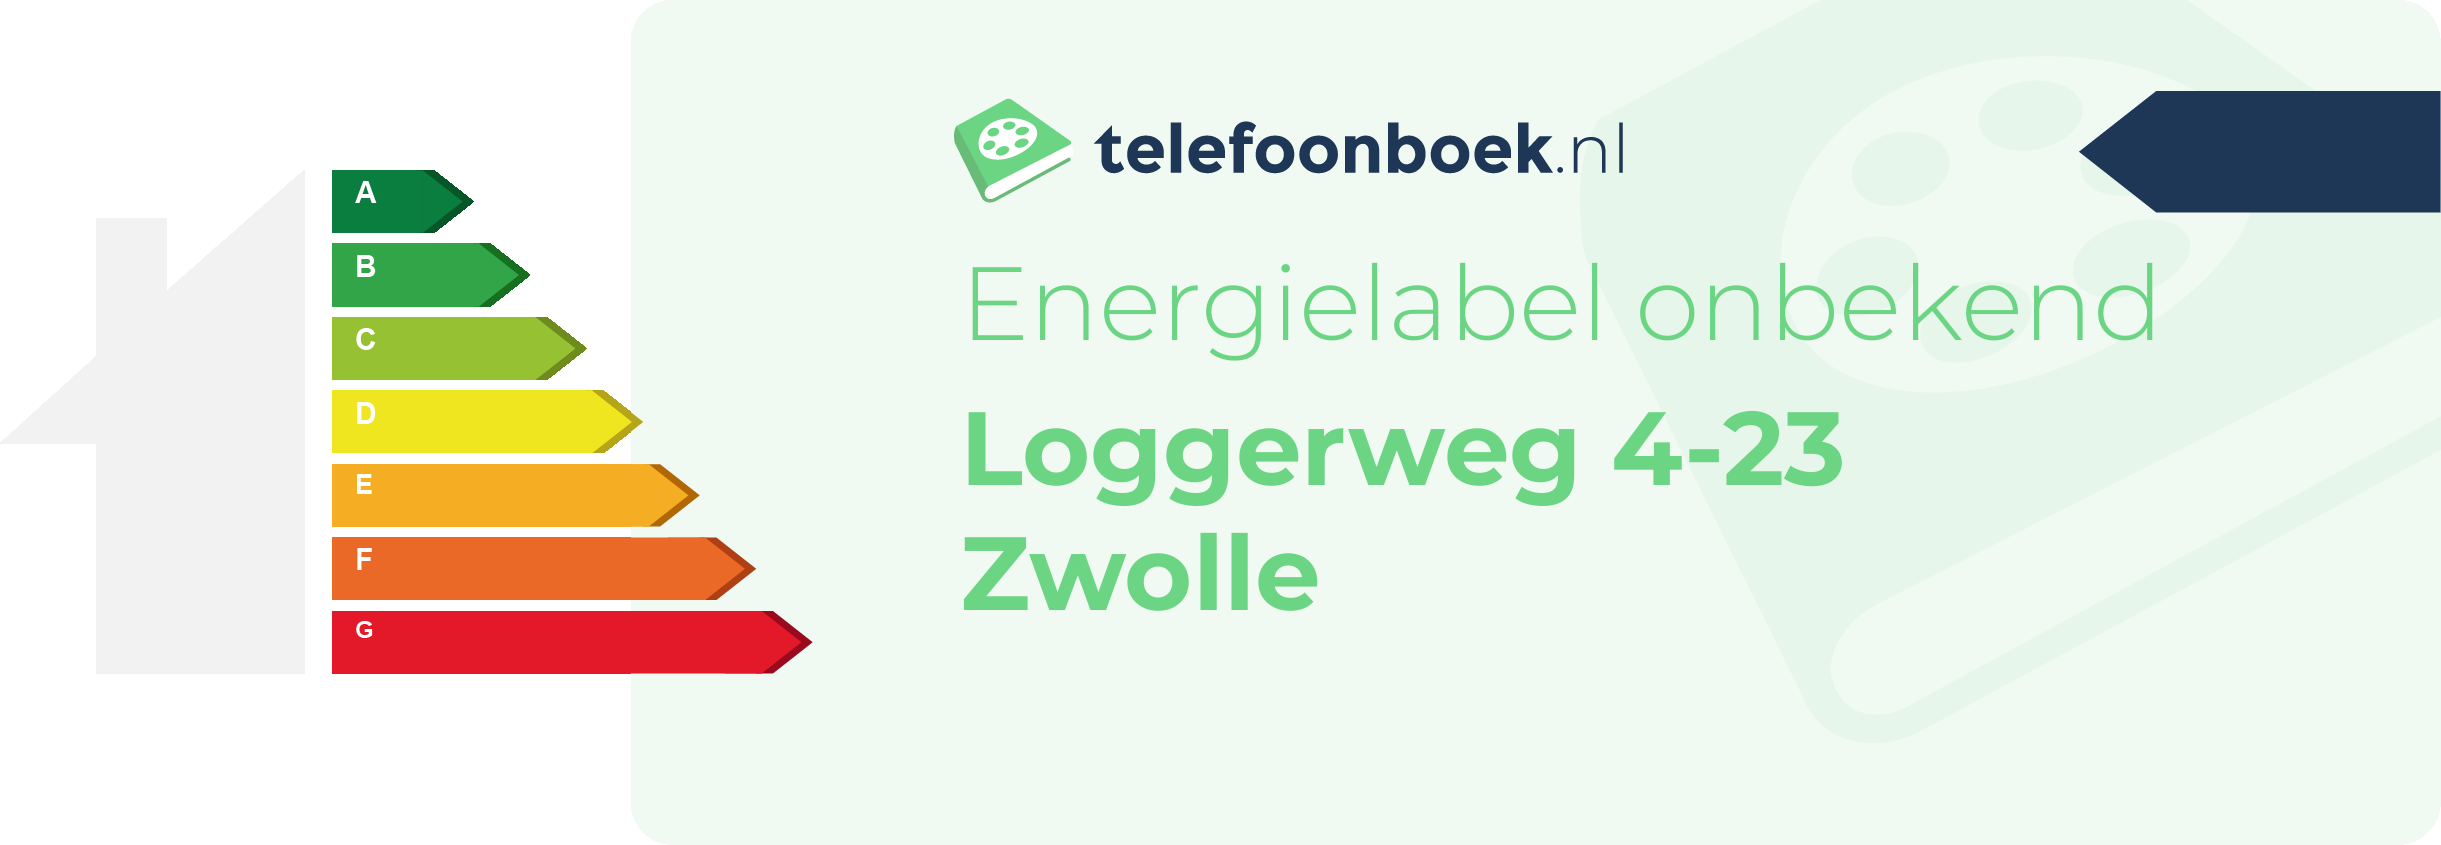 Energielabel Loggerweg 4-23 Zwolle